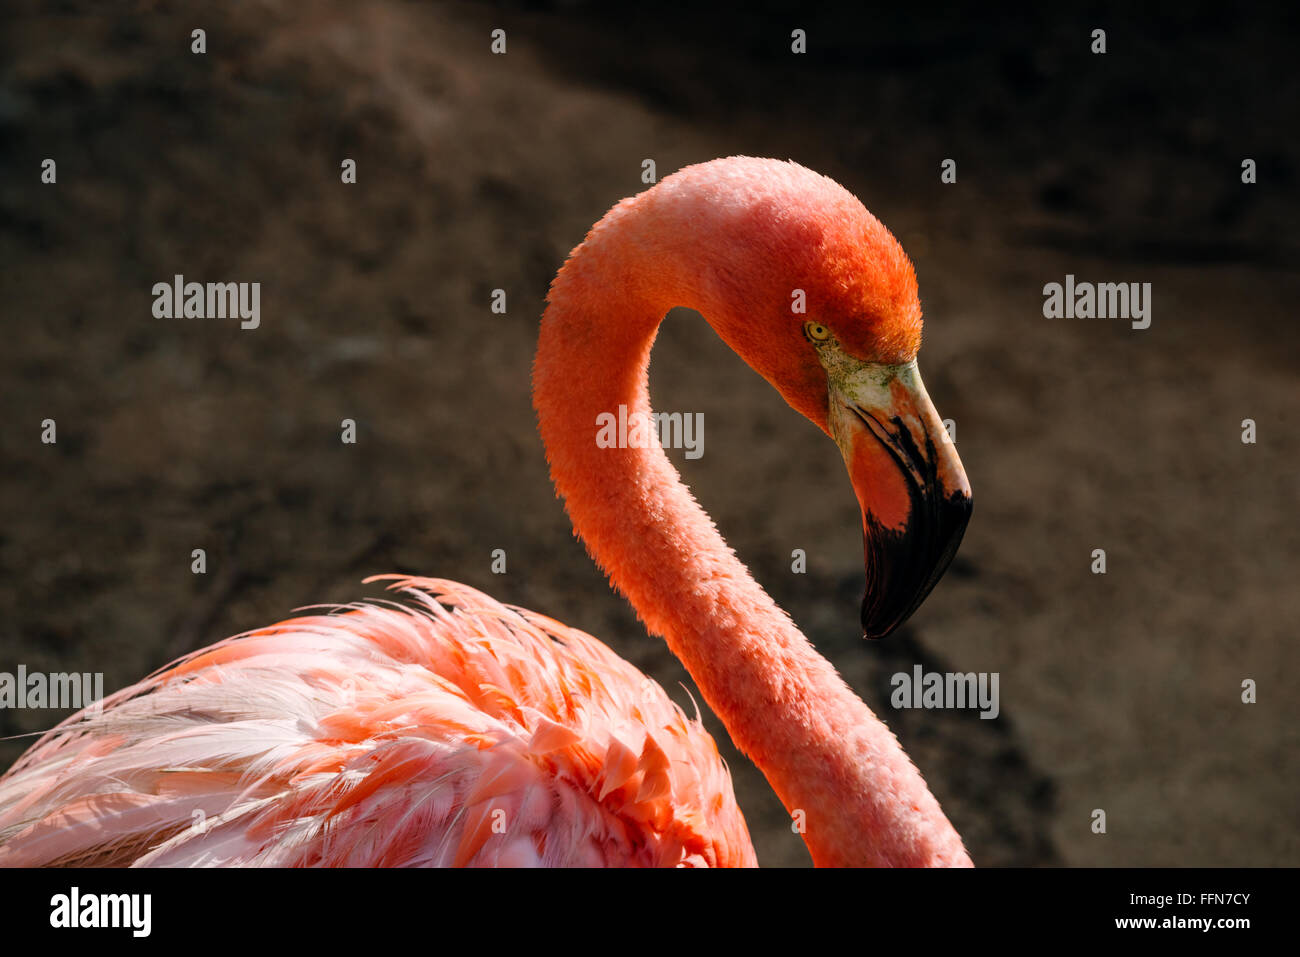 Flamingo retrato de aves coloridas de animales tropicales exóticos fondo oscuro Foto de stock